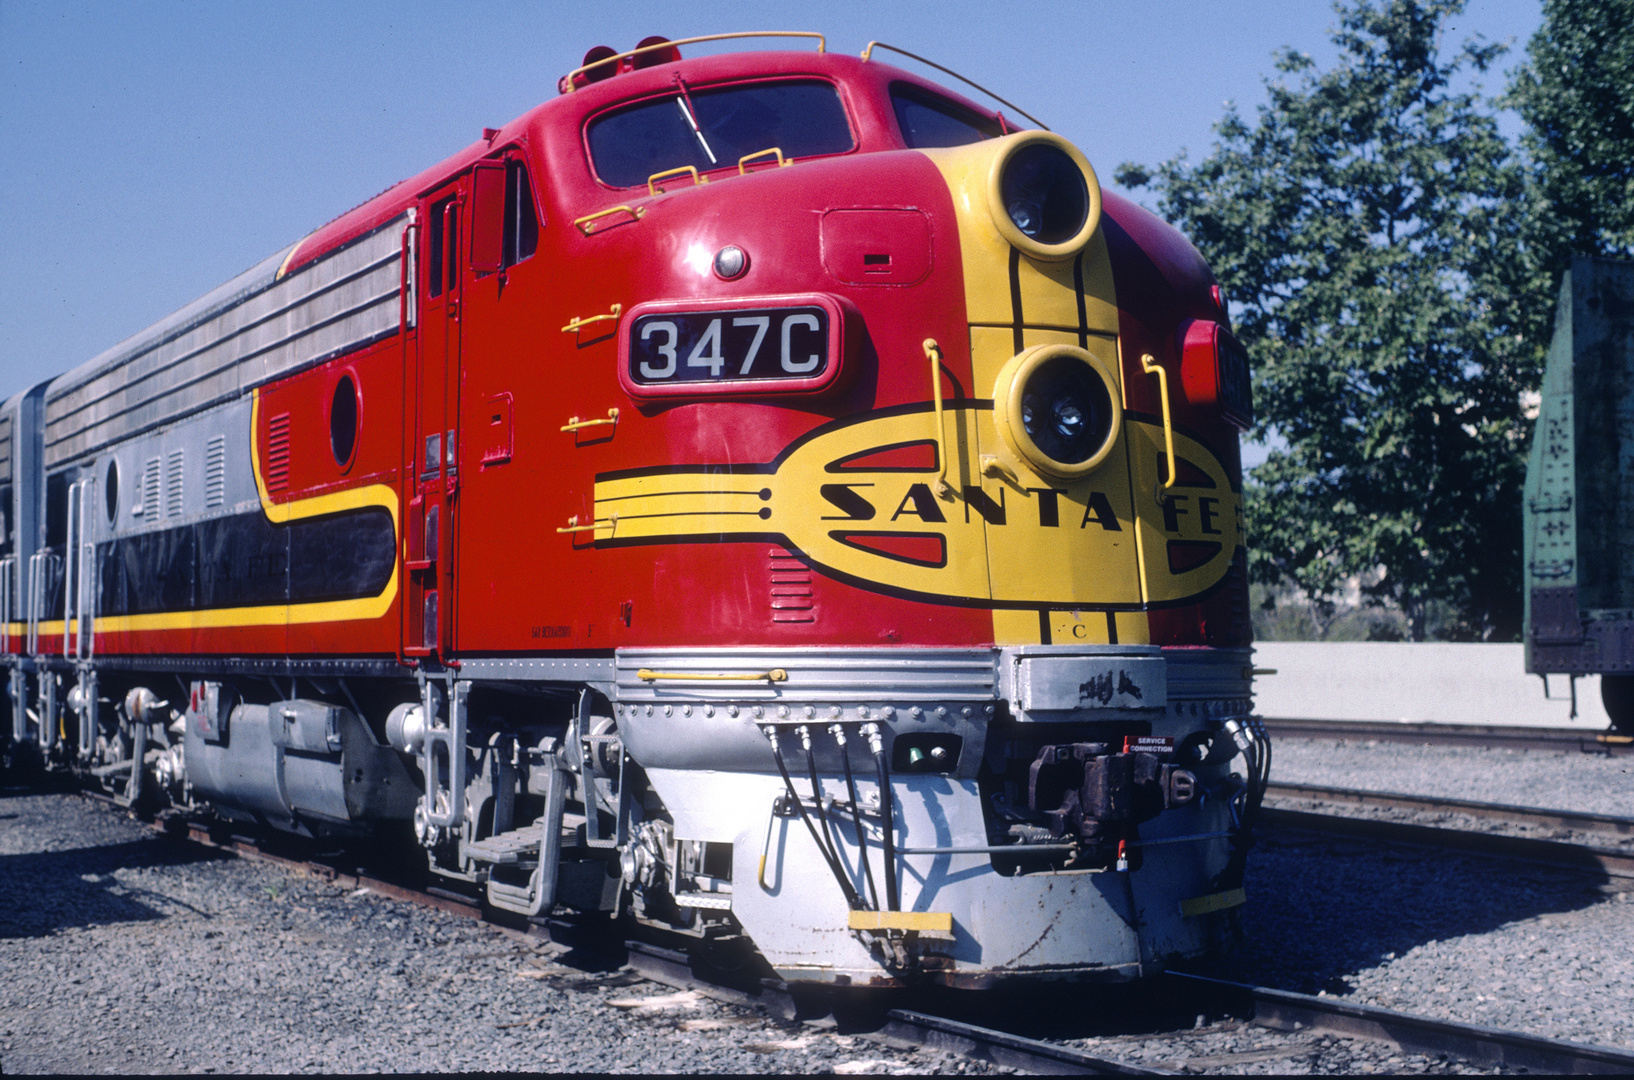 Santa Fe, ATSF #347C EMD F7A, California State Railroad Museum, Sacamento